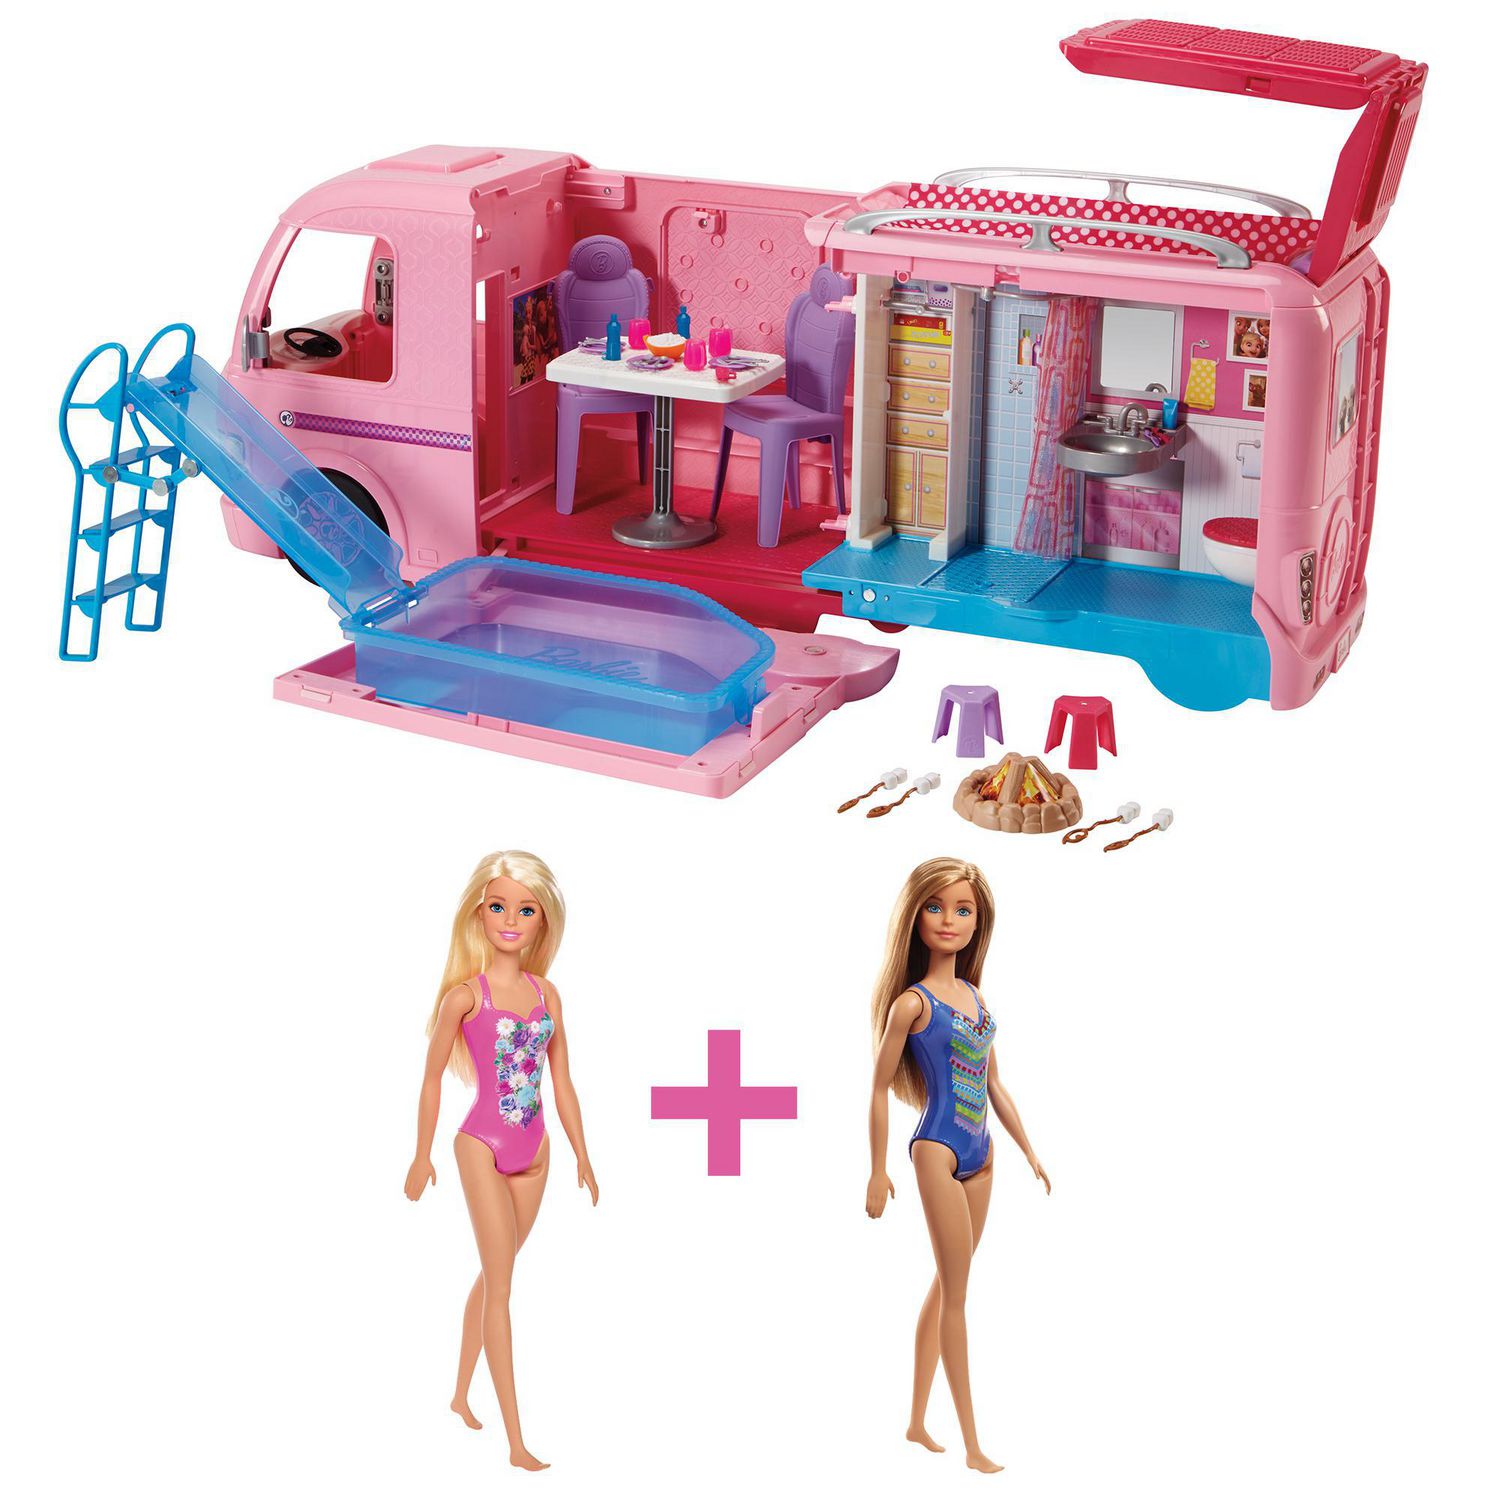 barbie dream camper stores